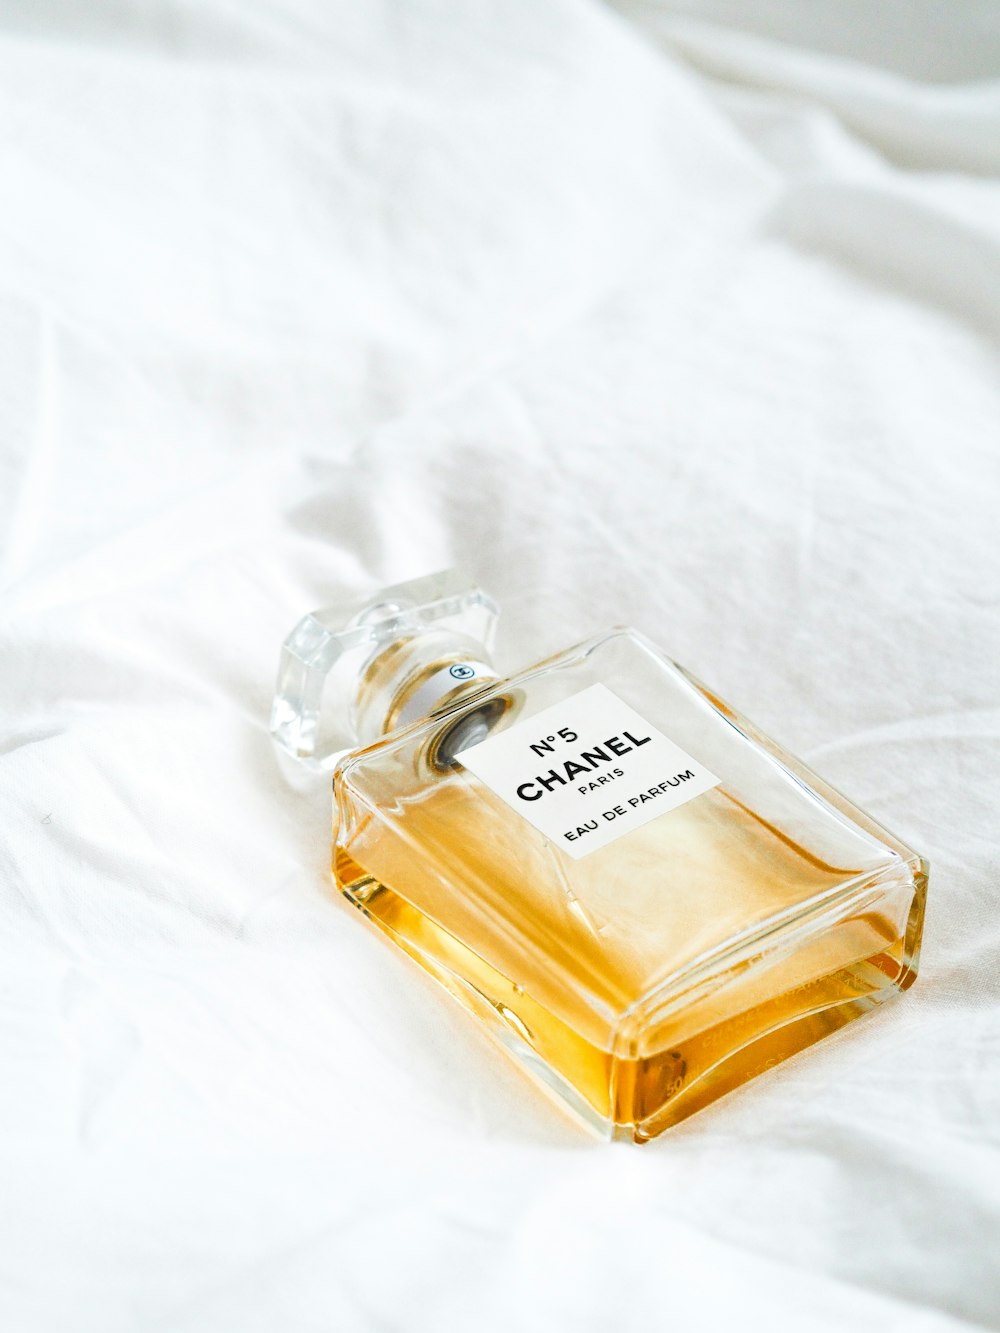 No 5 Chanel fragrance bottle